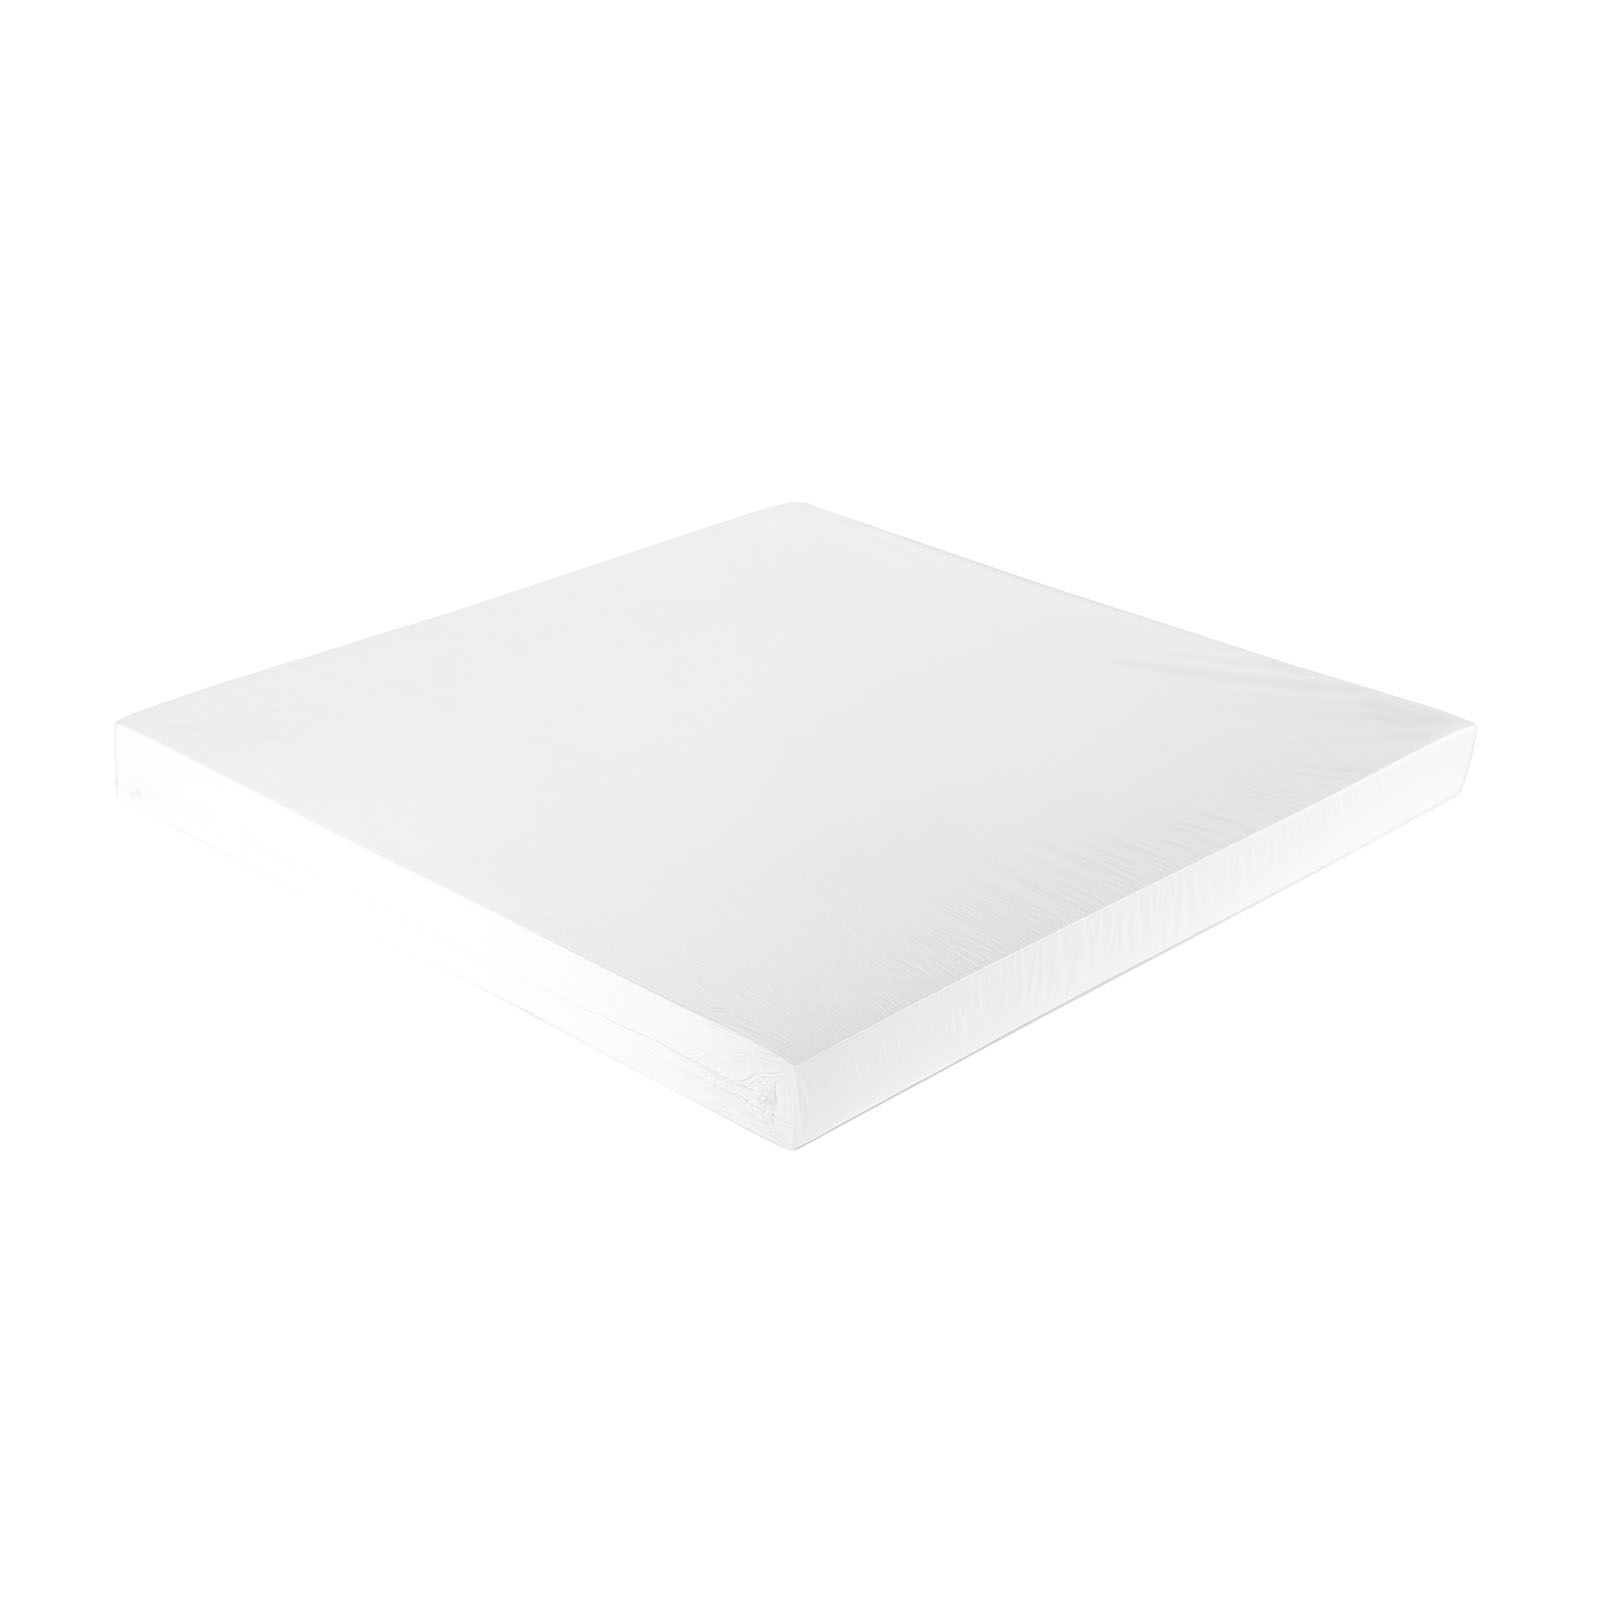 Florence • Yupo Papier 216g 12x12 White 5x